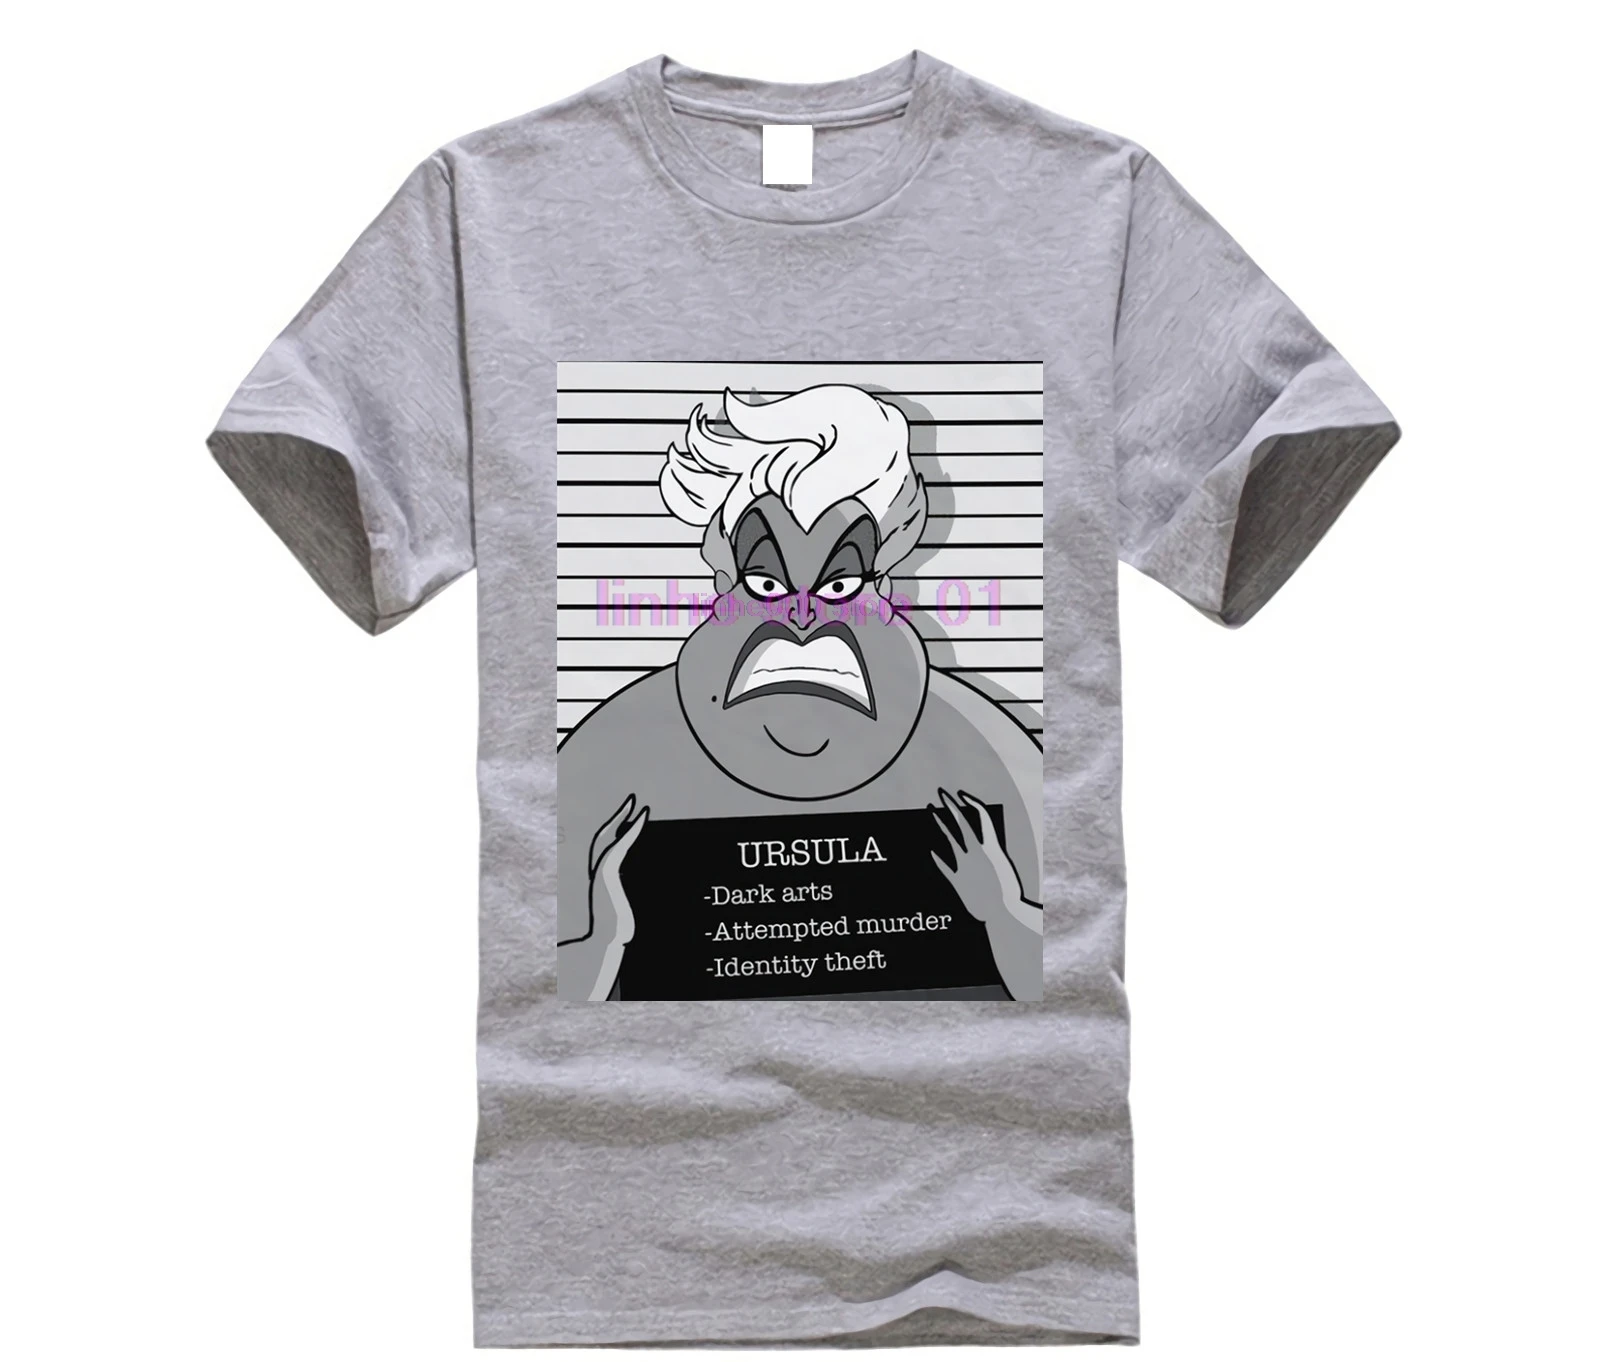 Мужская футболка s Ursula Mugshot, Модная белая забавная футболка, новинка, футболка для мужчин - Цвет: light grey